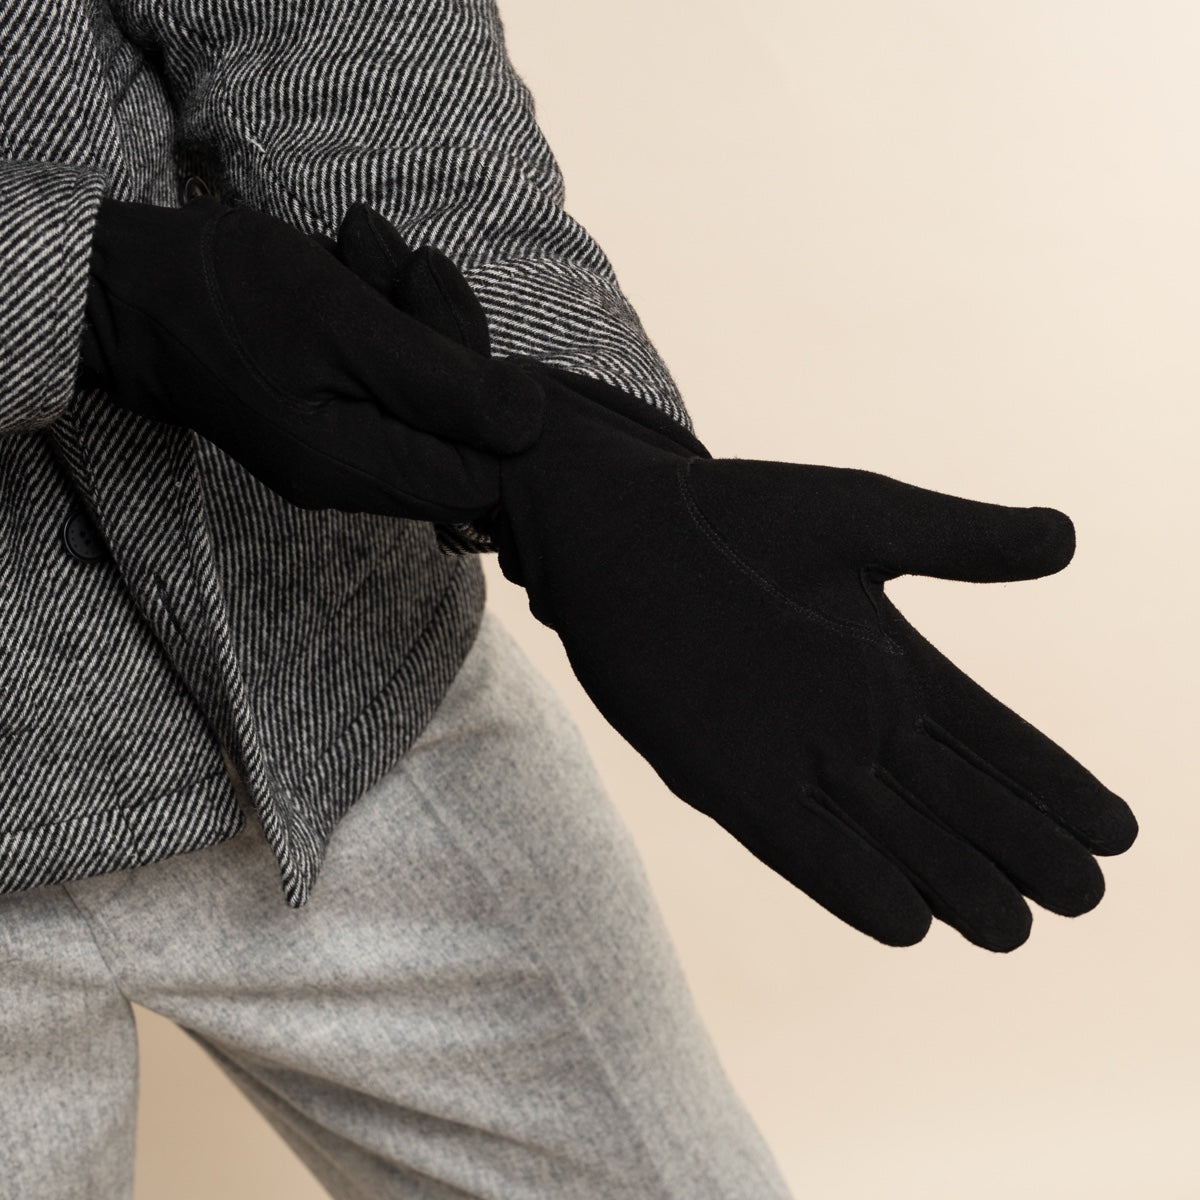 Suede Leather Gloves Black Men Rex - Schwartz & von Halen® - Premium Leather Gloves - 9